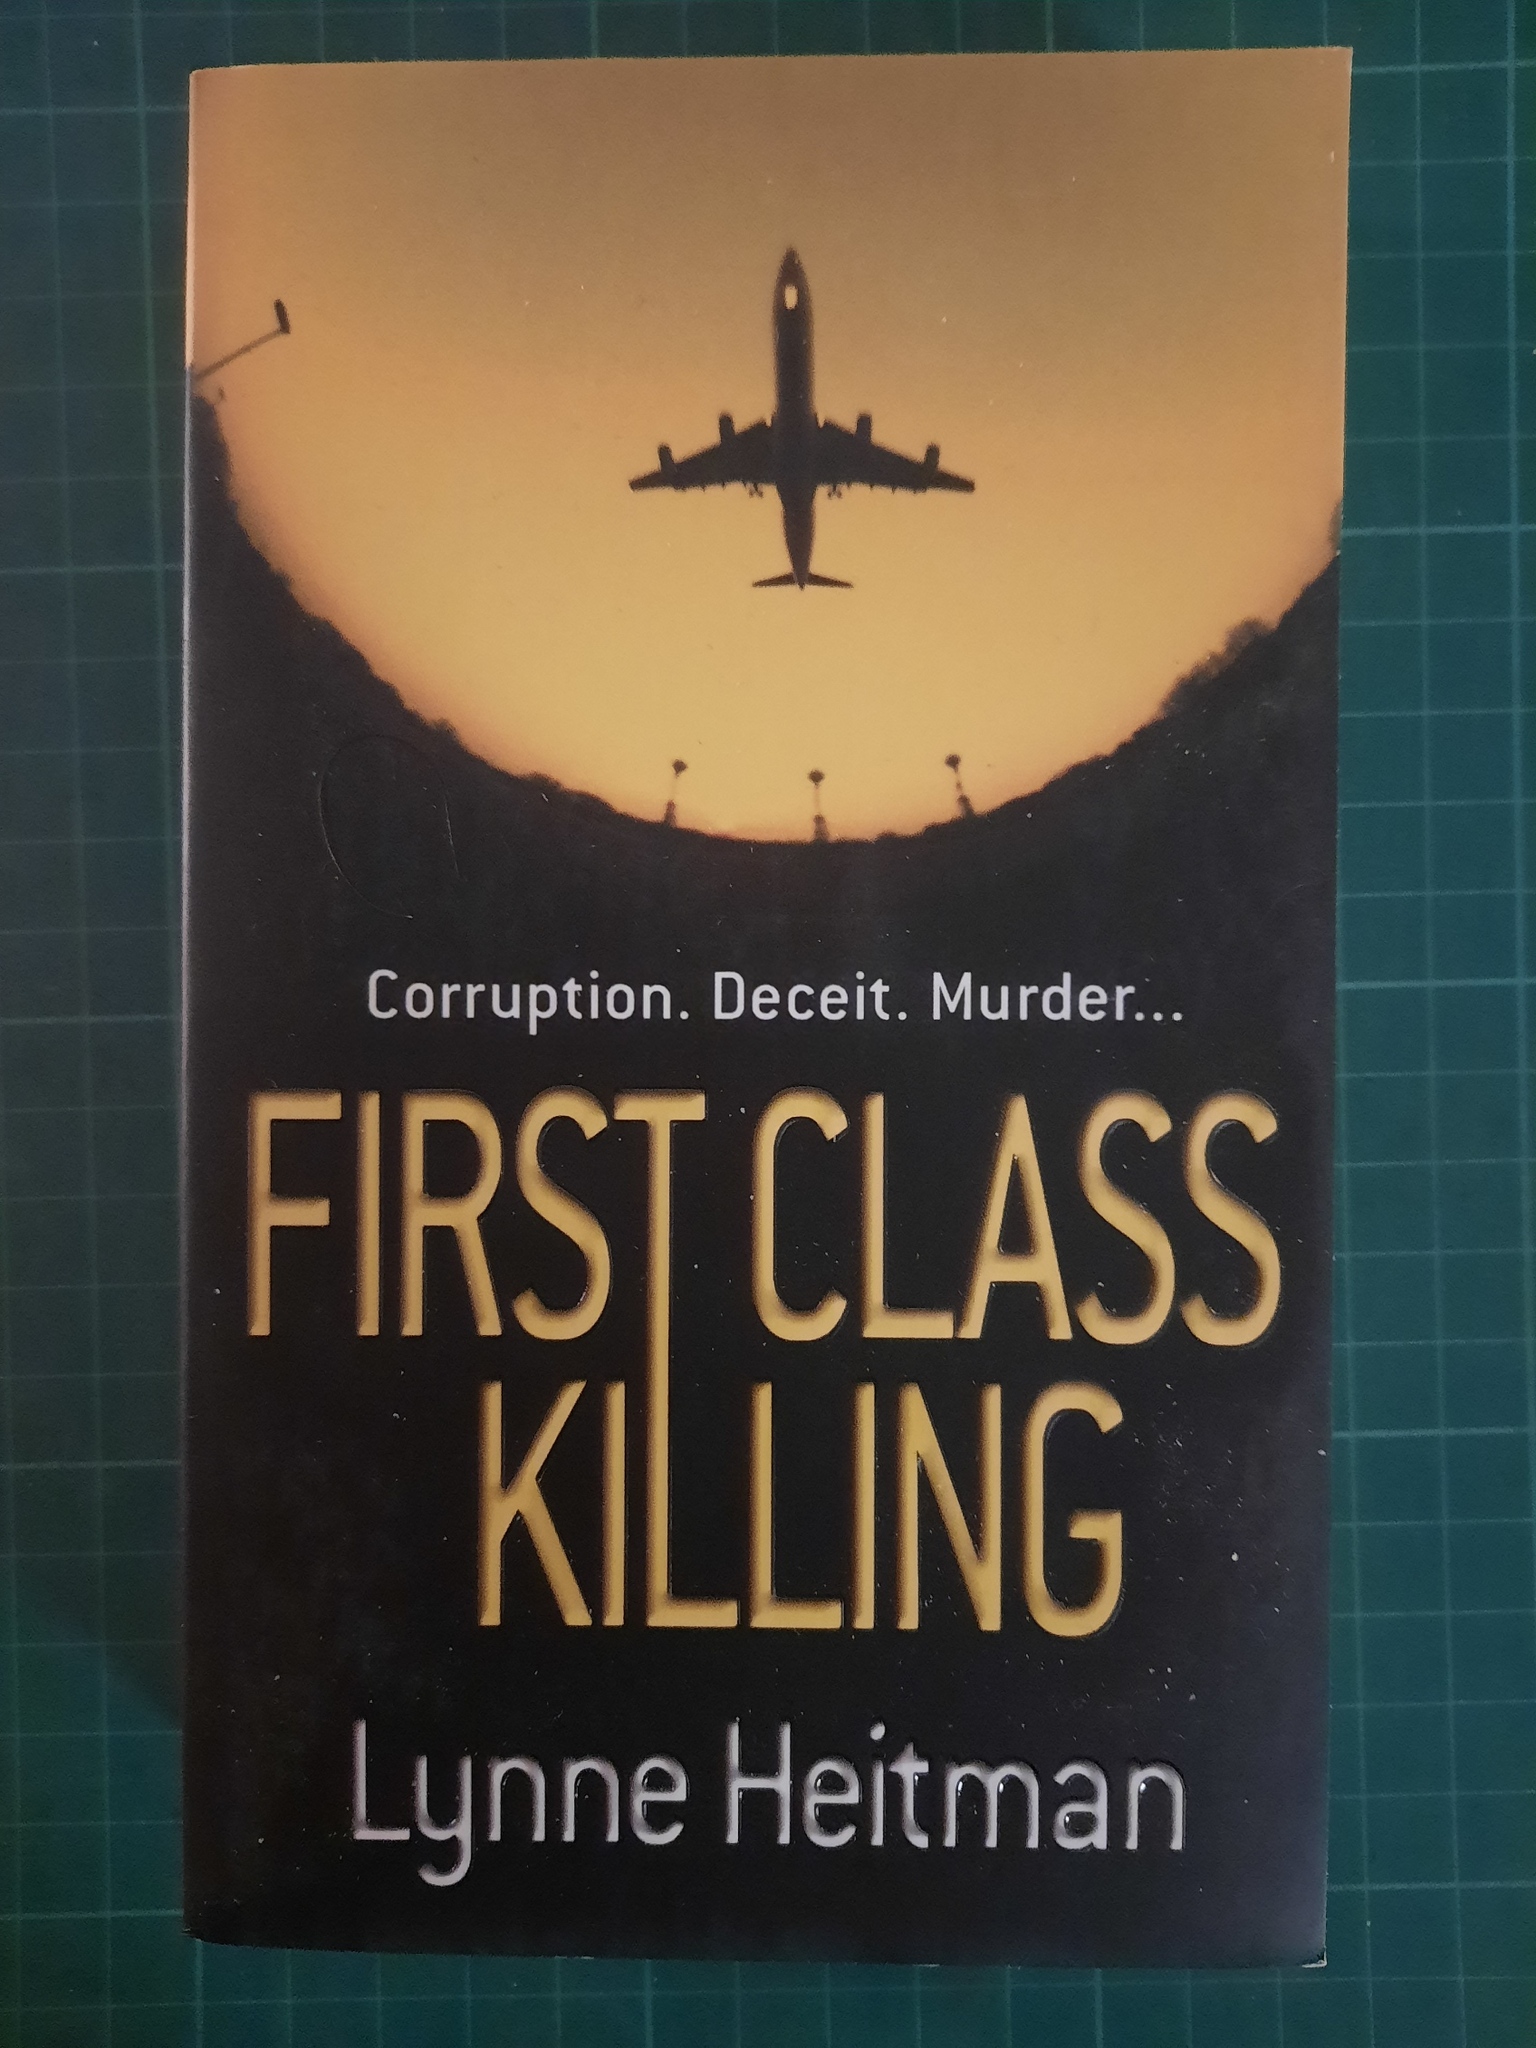 First class killing